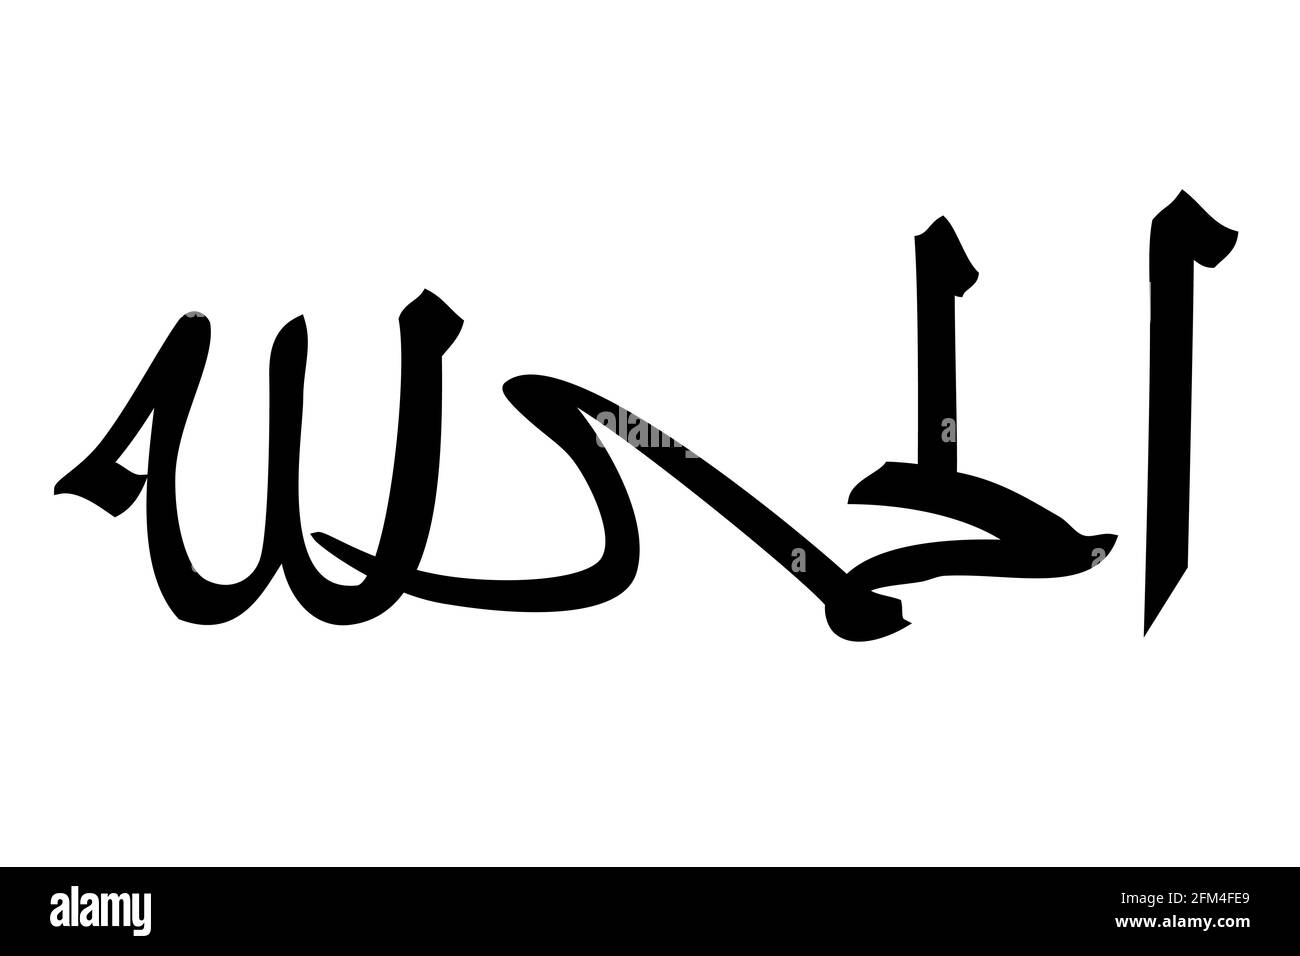 Dessin A La Main Vectoriel Calligraphie Esquisse Arabe miin Amin Ameen Verily Vraiment Il Est Vrai Laissez Le Etre Pour La Conception D Element Ou Une Partie De Votre Devis Ou Image Vectorielle Stock